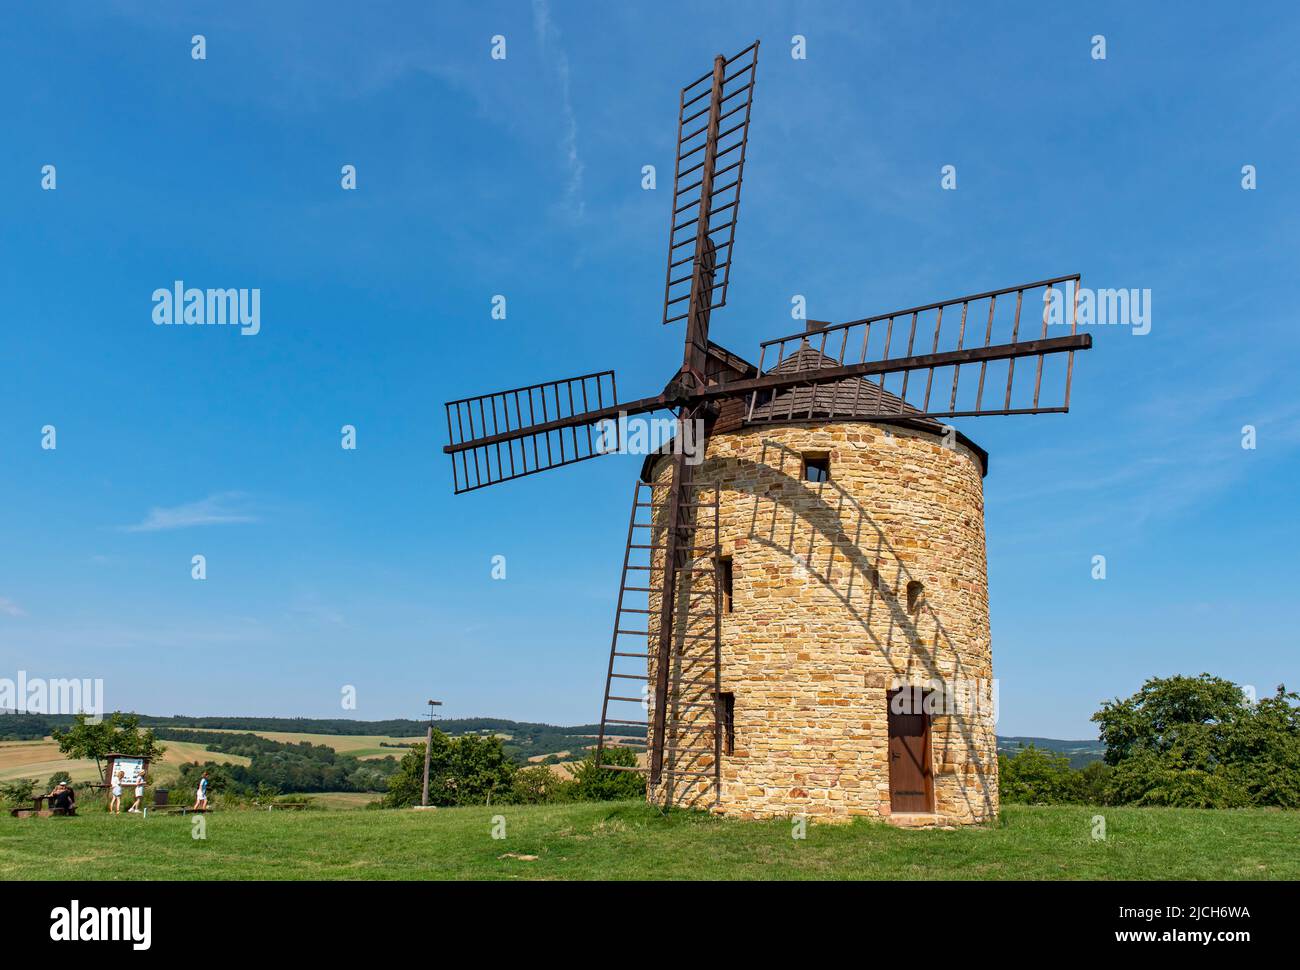 Jalubí Windmill, Czech Republic Stock Photo